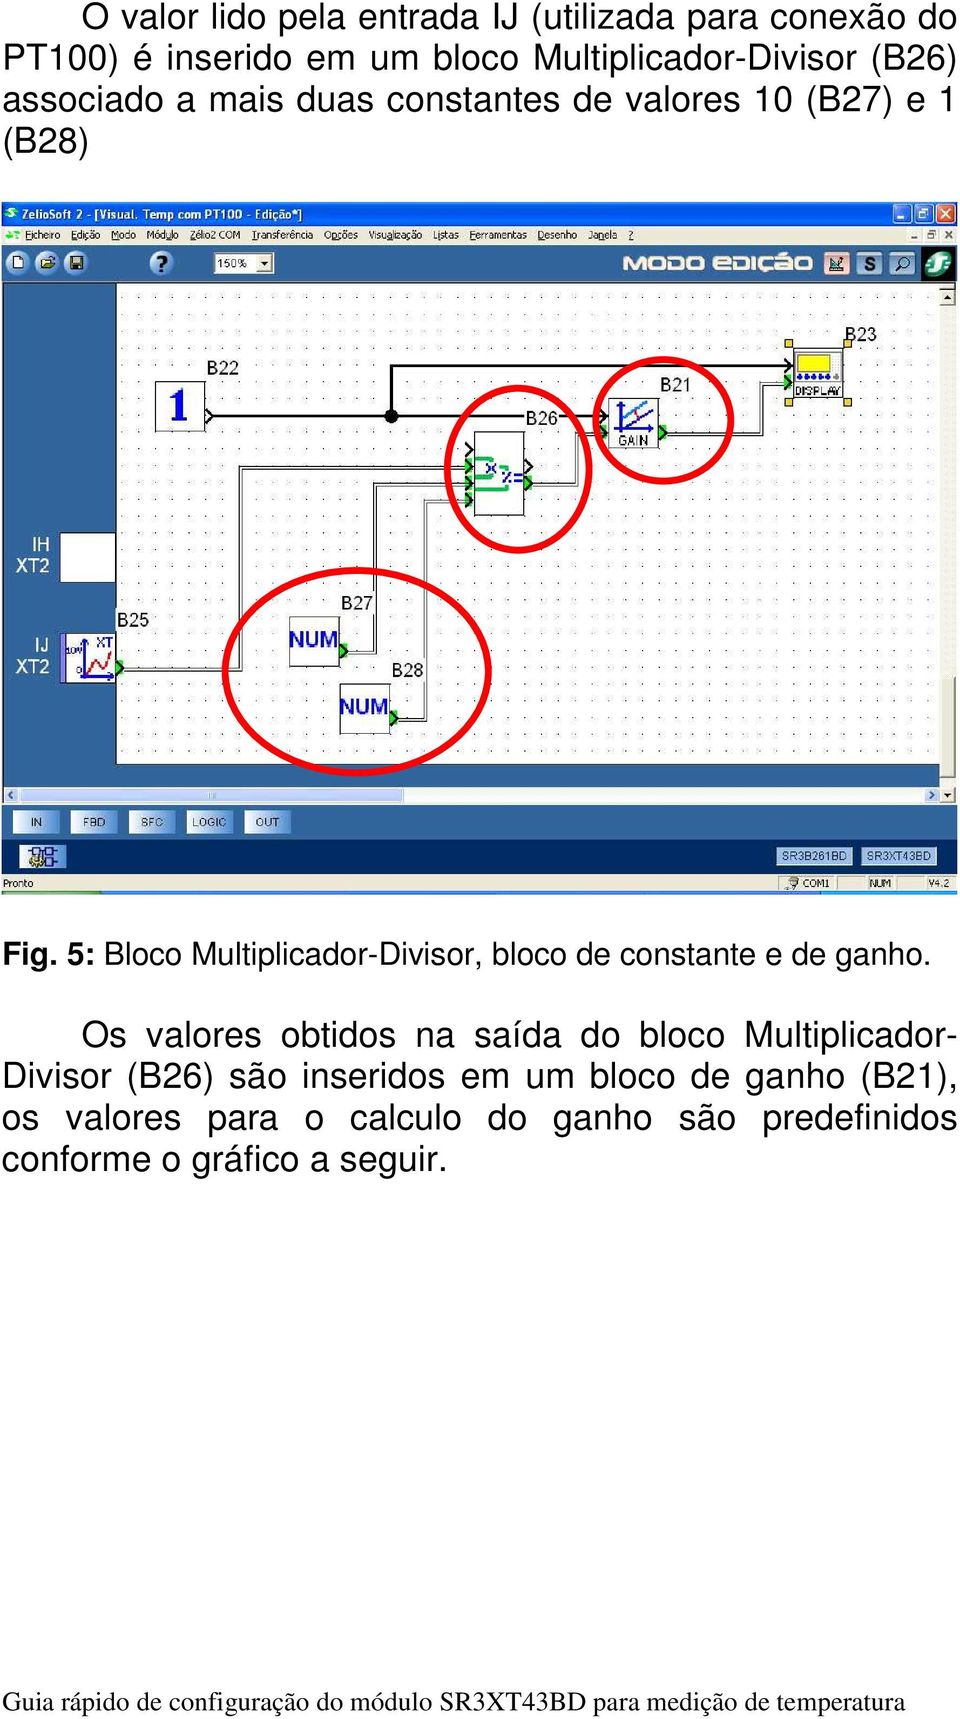 5: Bloco Multiplicador-Divisor, bloco de constante e de ganho.